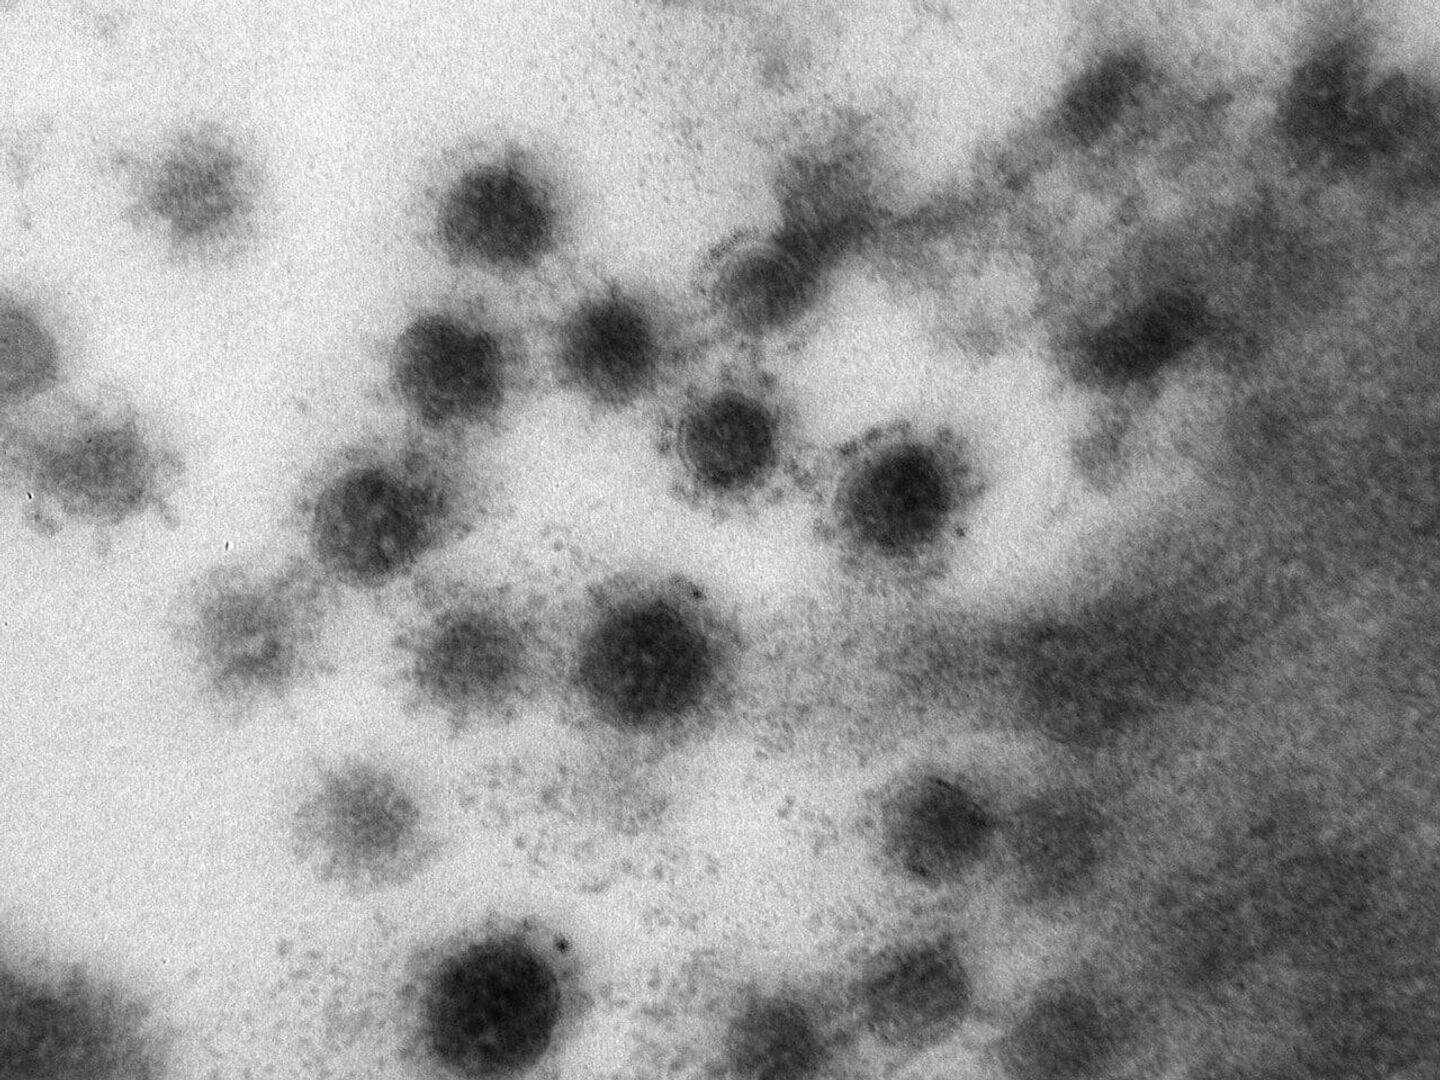 Ковид 13. Вирус Covid 19 под микроскопом. Дельта штамм коронавируса под микроскопом. SARS-cov-2 Дельта штамм. Вирус коронавирус микроскоп.